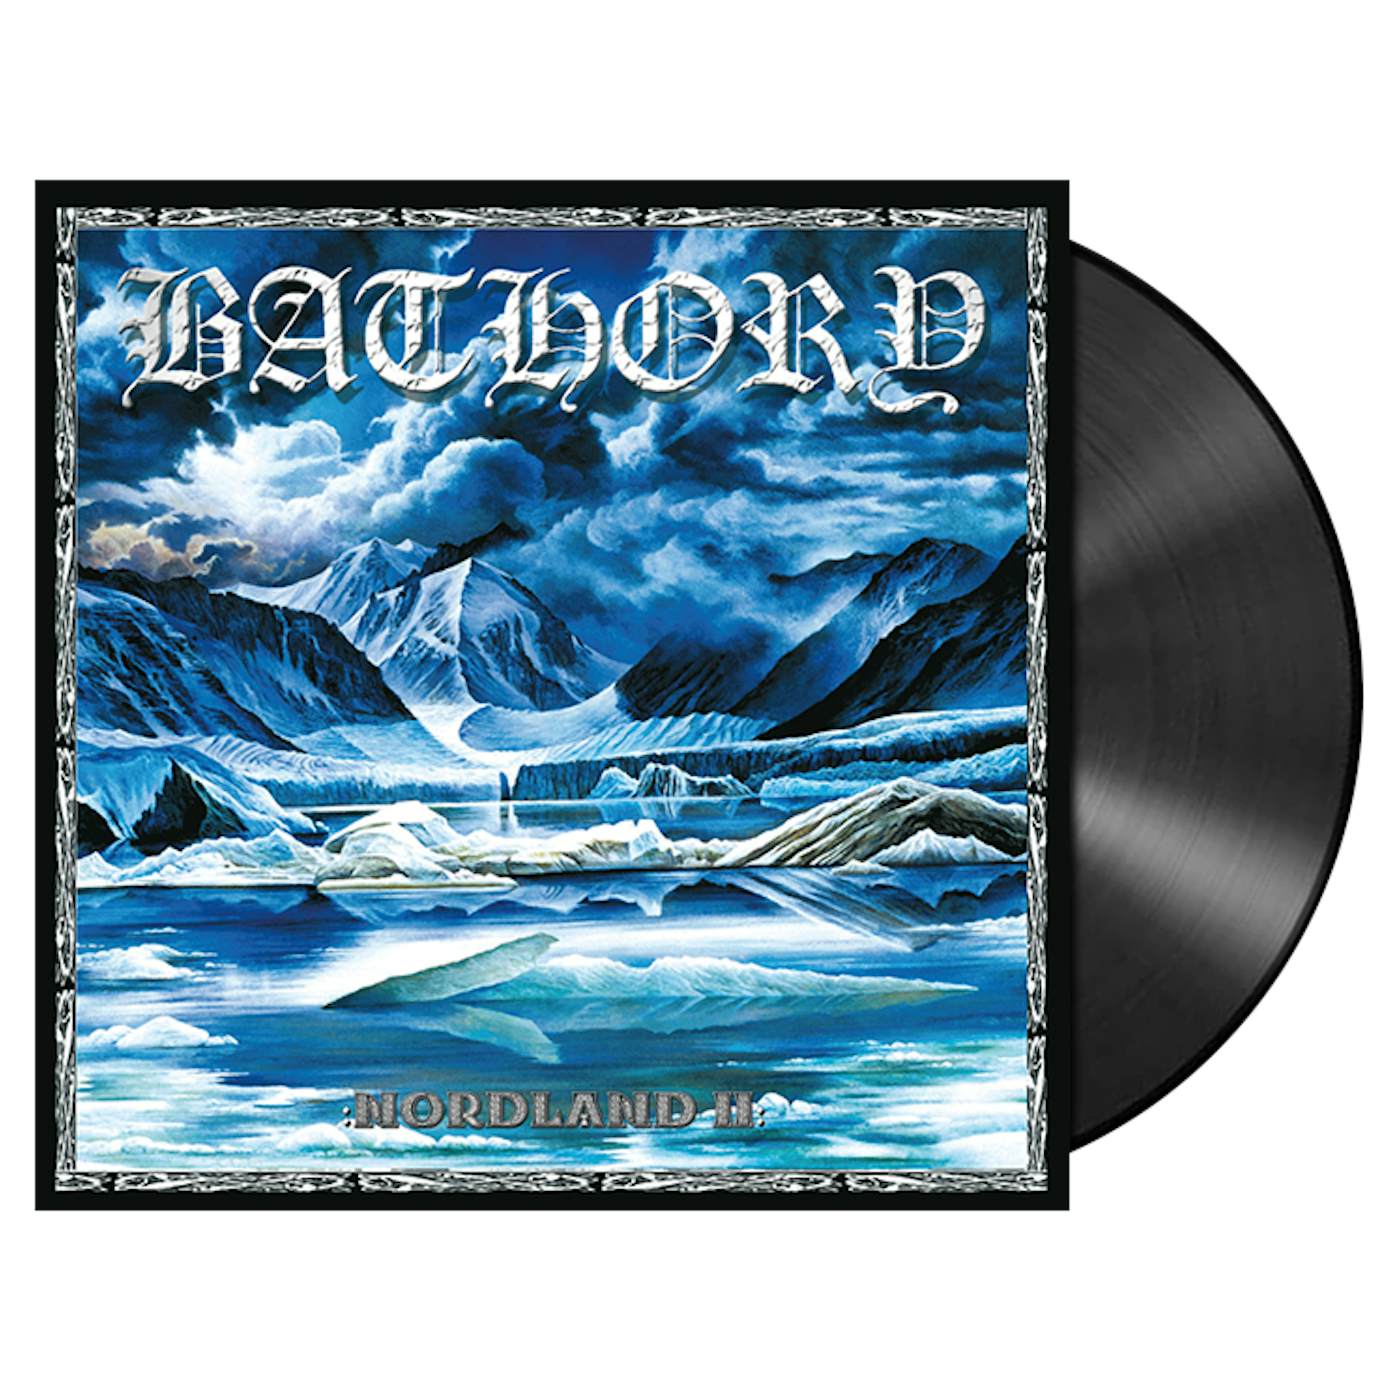 BATHORY - 'Nordland II' 2xLP (Vinyl)